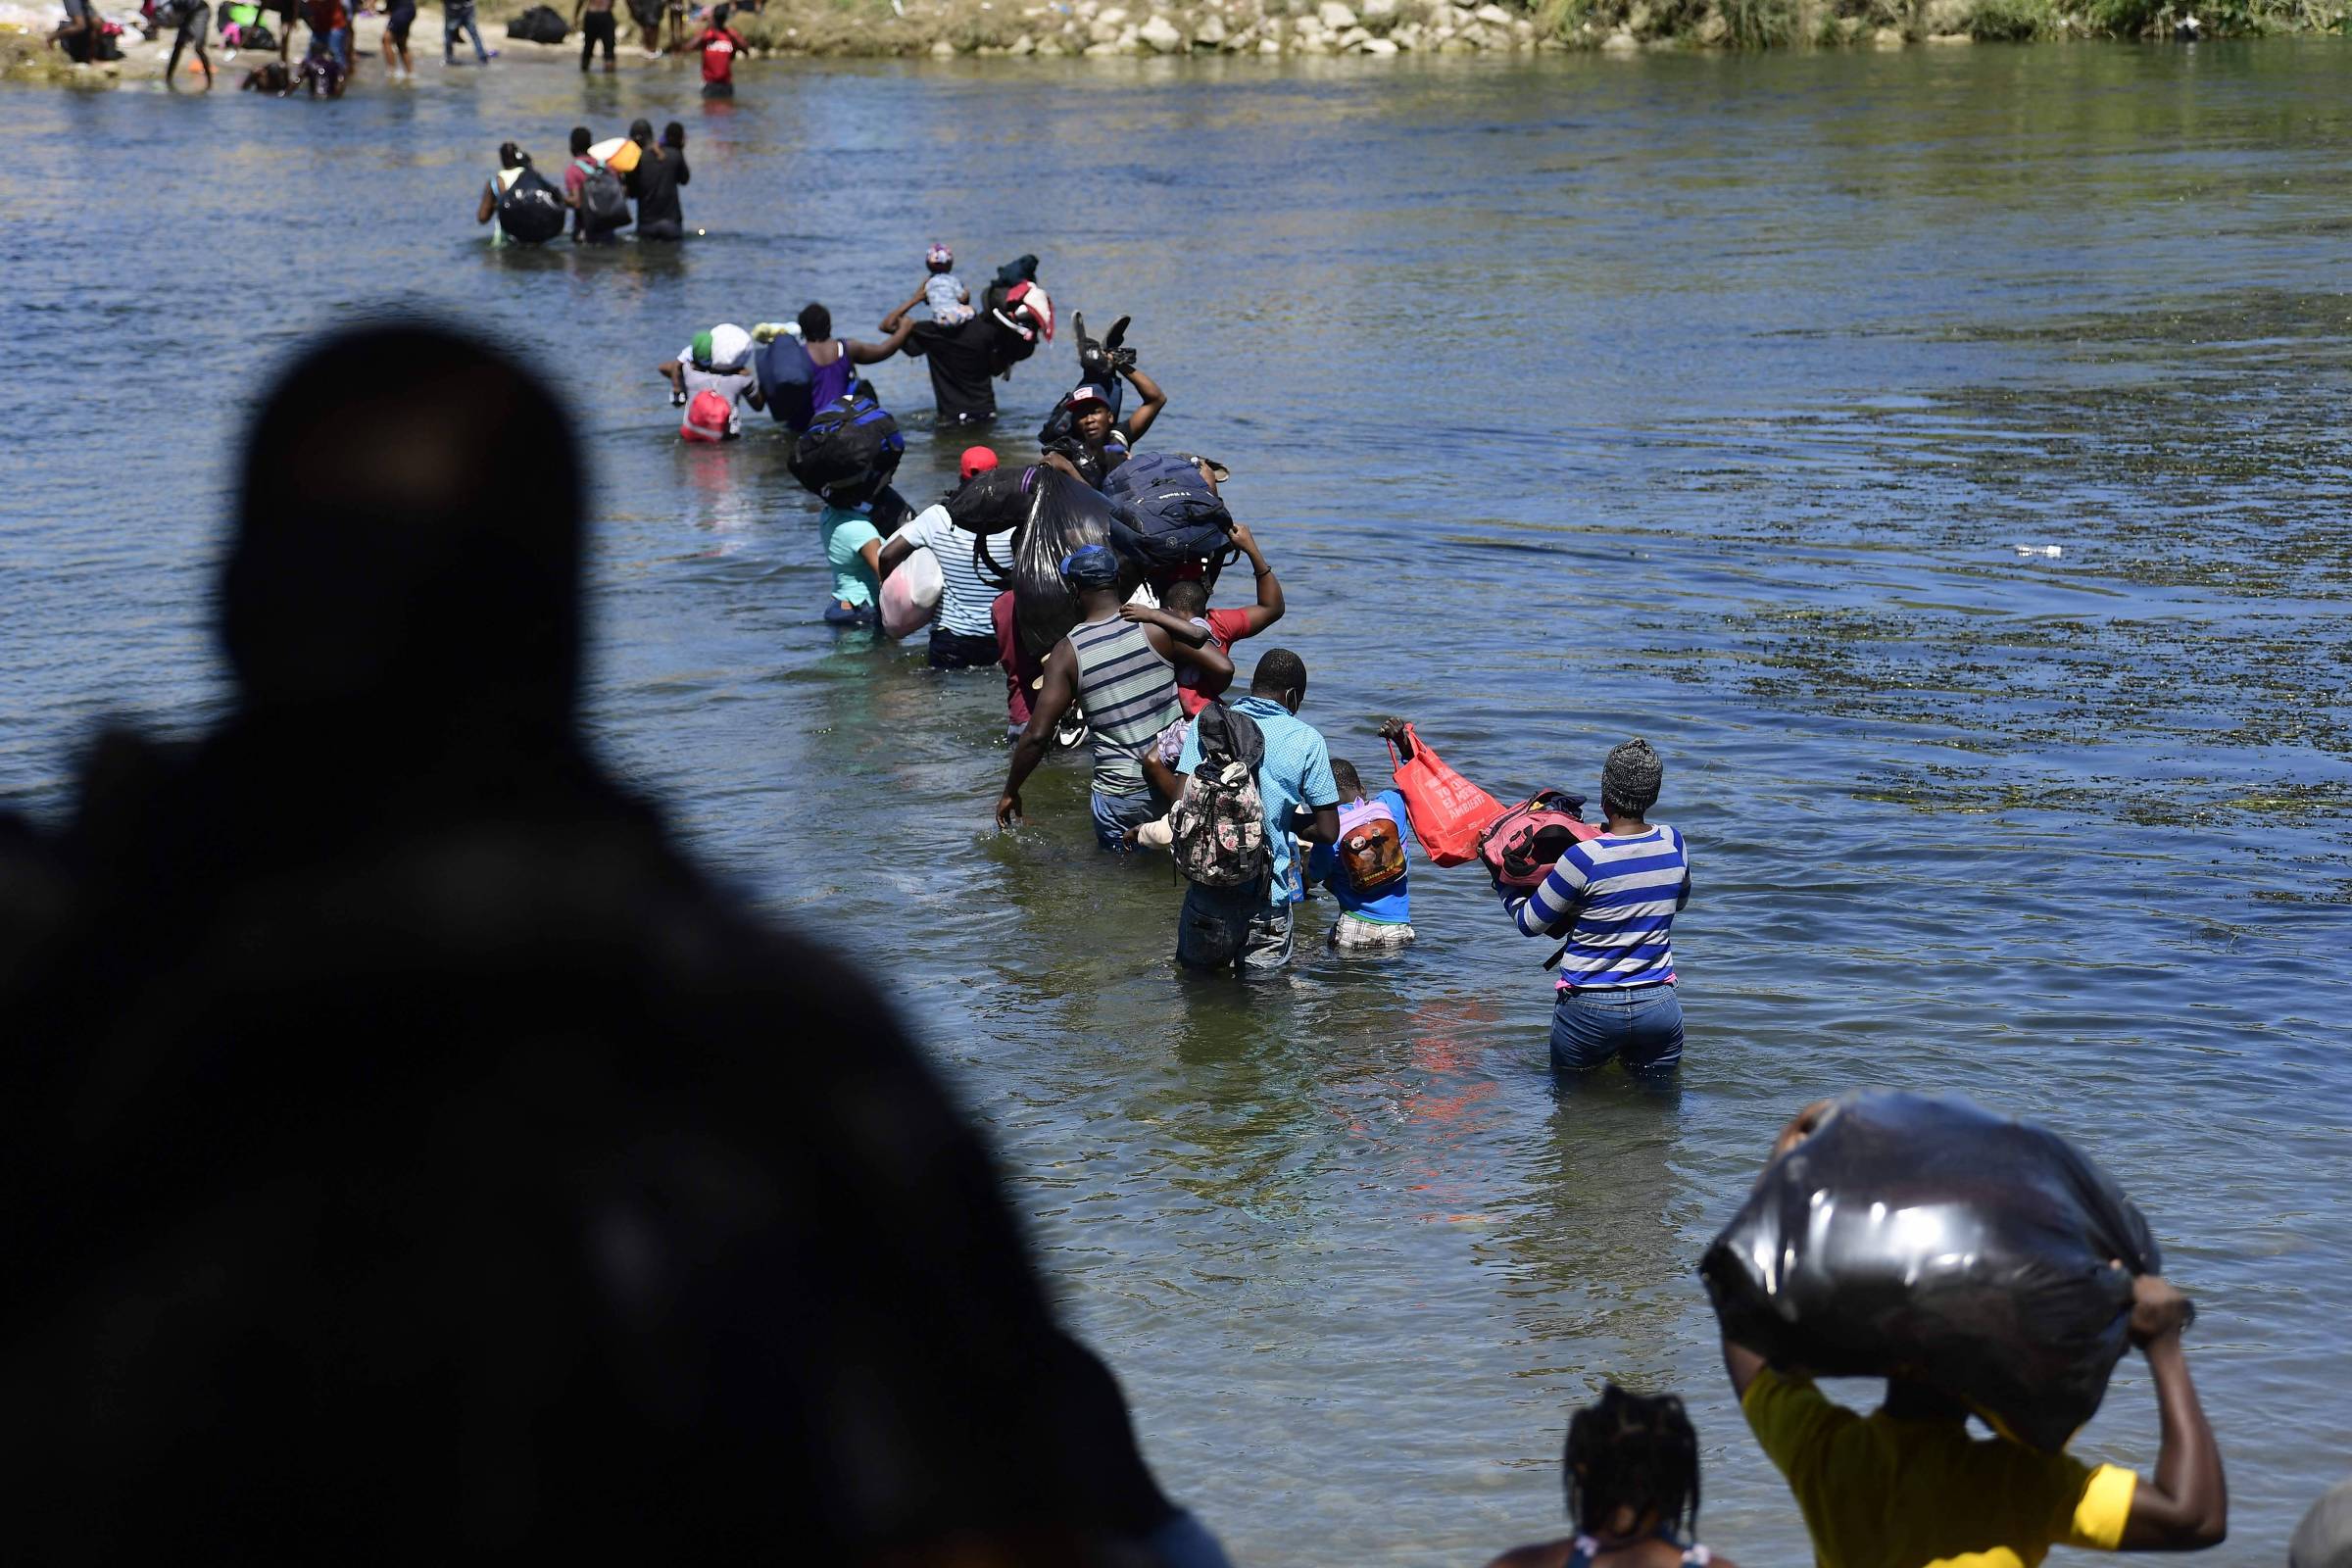 Crisis migratoria: Estados Unidos deporta a 30 niños brasileños a Haití – 28/09/2021 – en todo el mundo